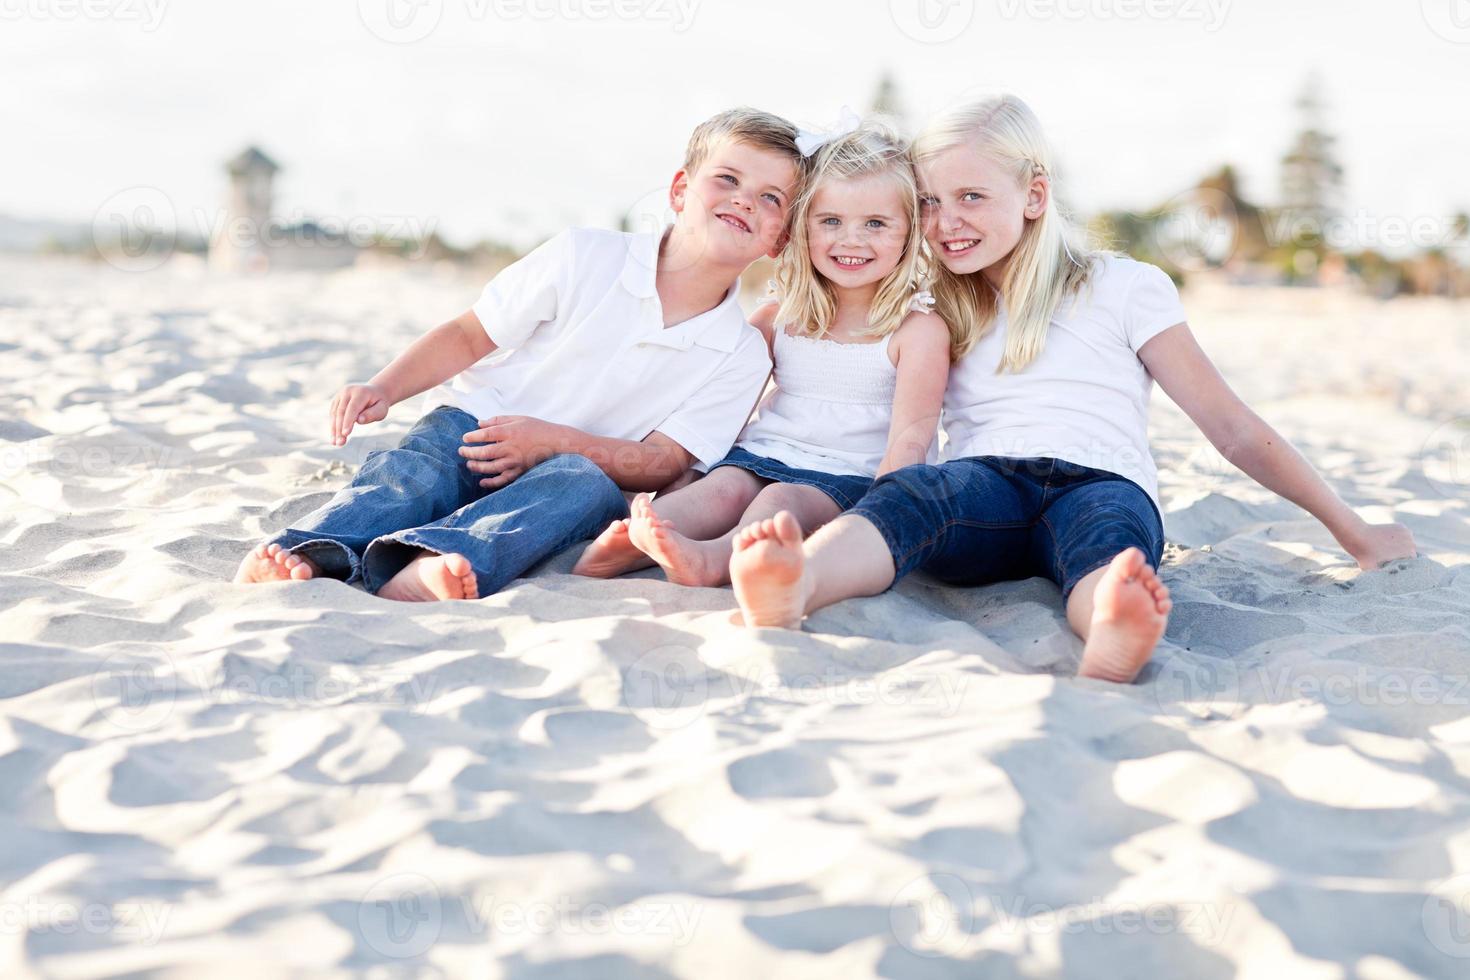 förtjusande systrar och bror har roligt på de strand foto